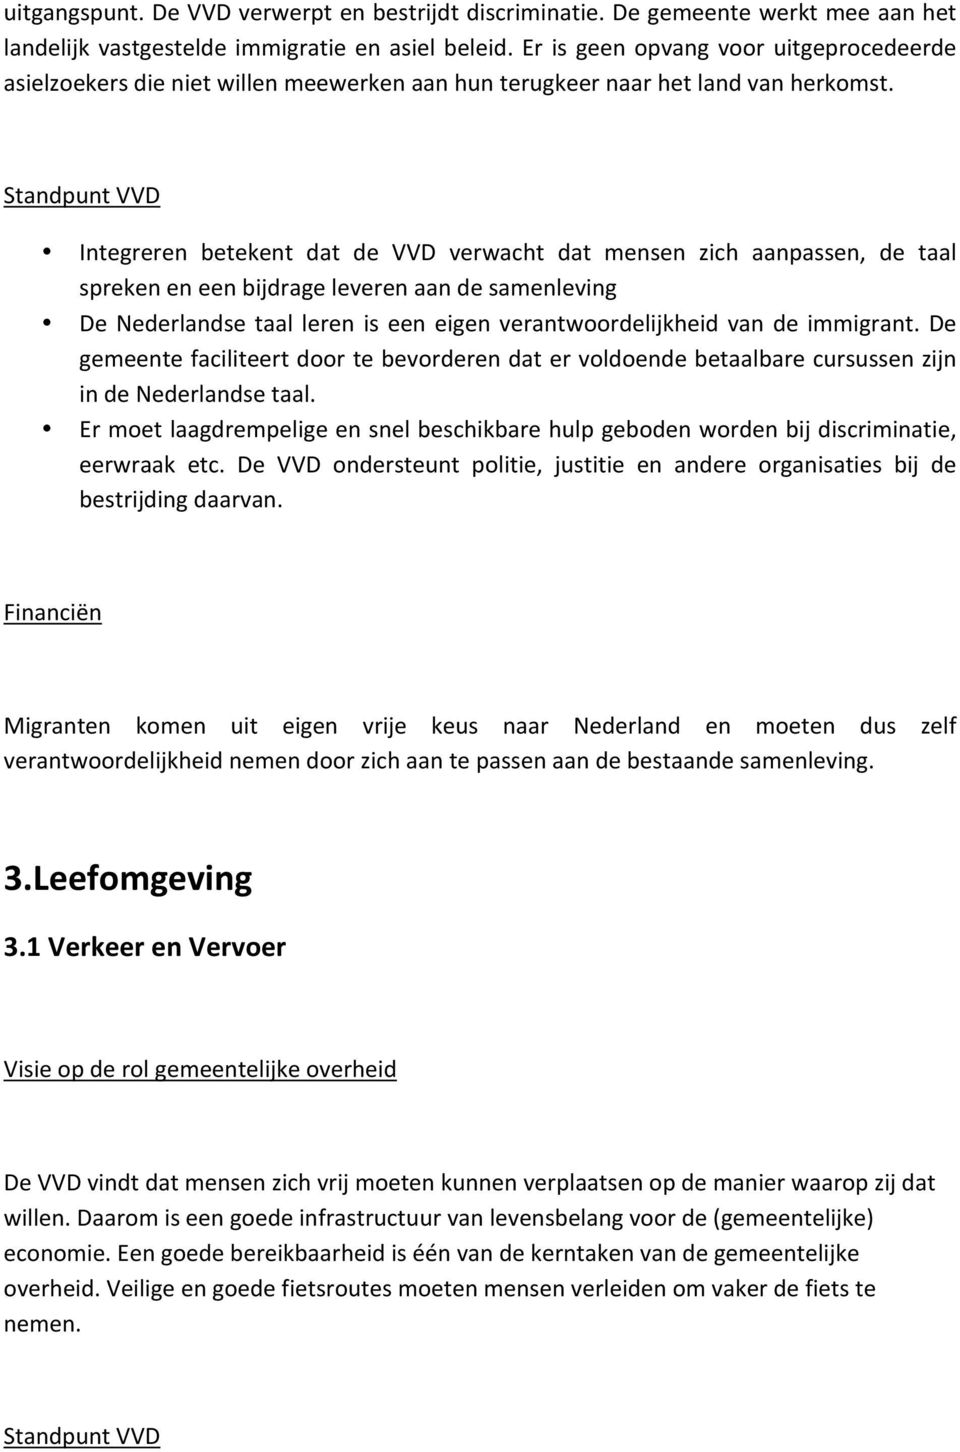 StandpuntVVD Integreren betekent dat de VVD verwacht dat mensen zich aanpassen, de taal sprekeneneenbijdrageleverenaandesamenleving De Nederlandse taal leren is een eigen verantwoordelijkheid van de